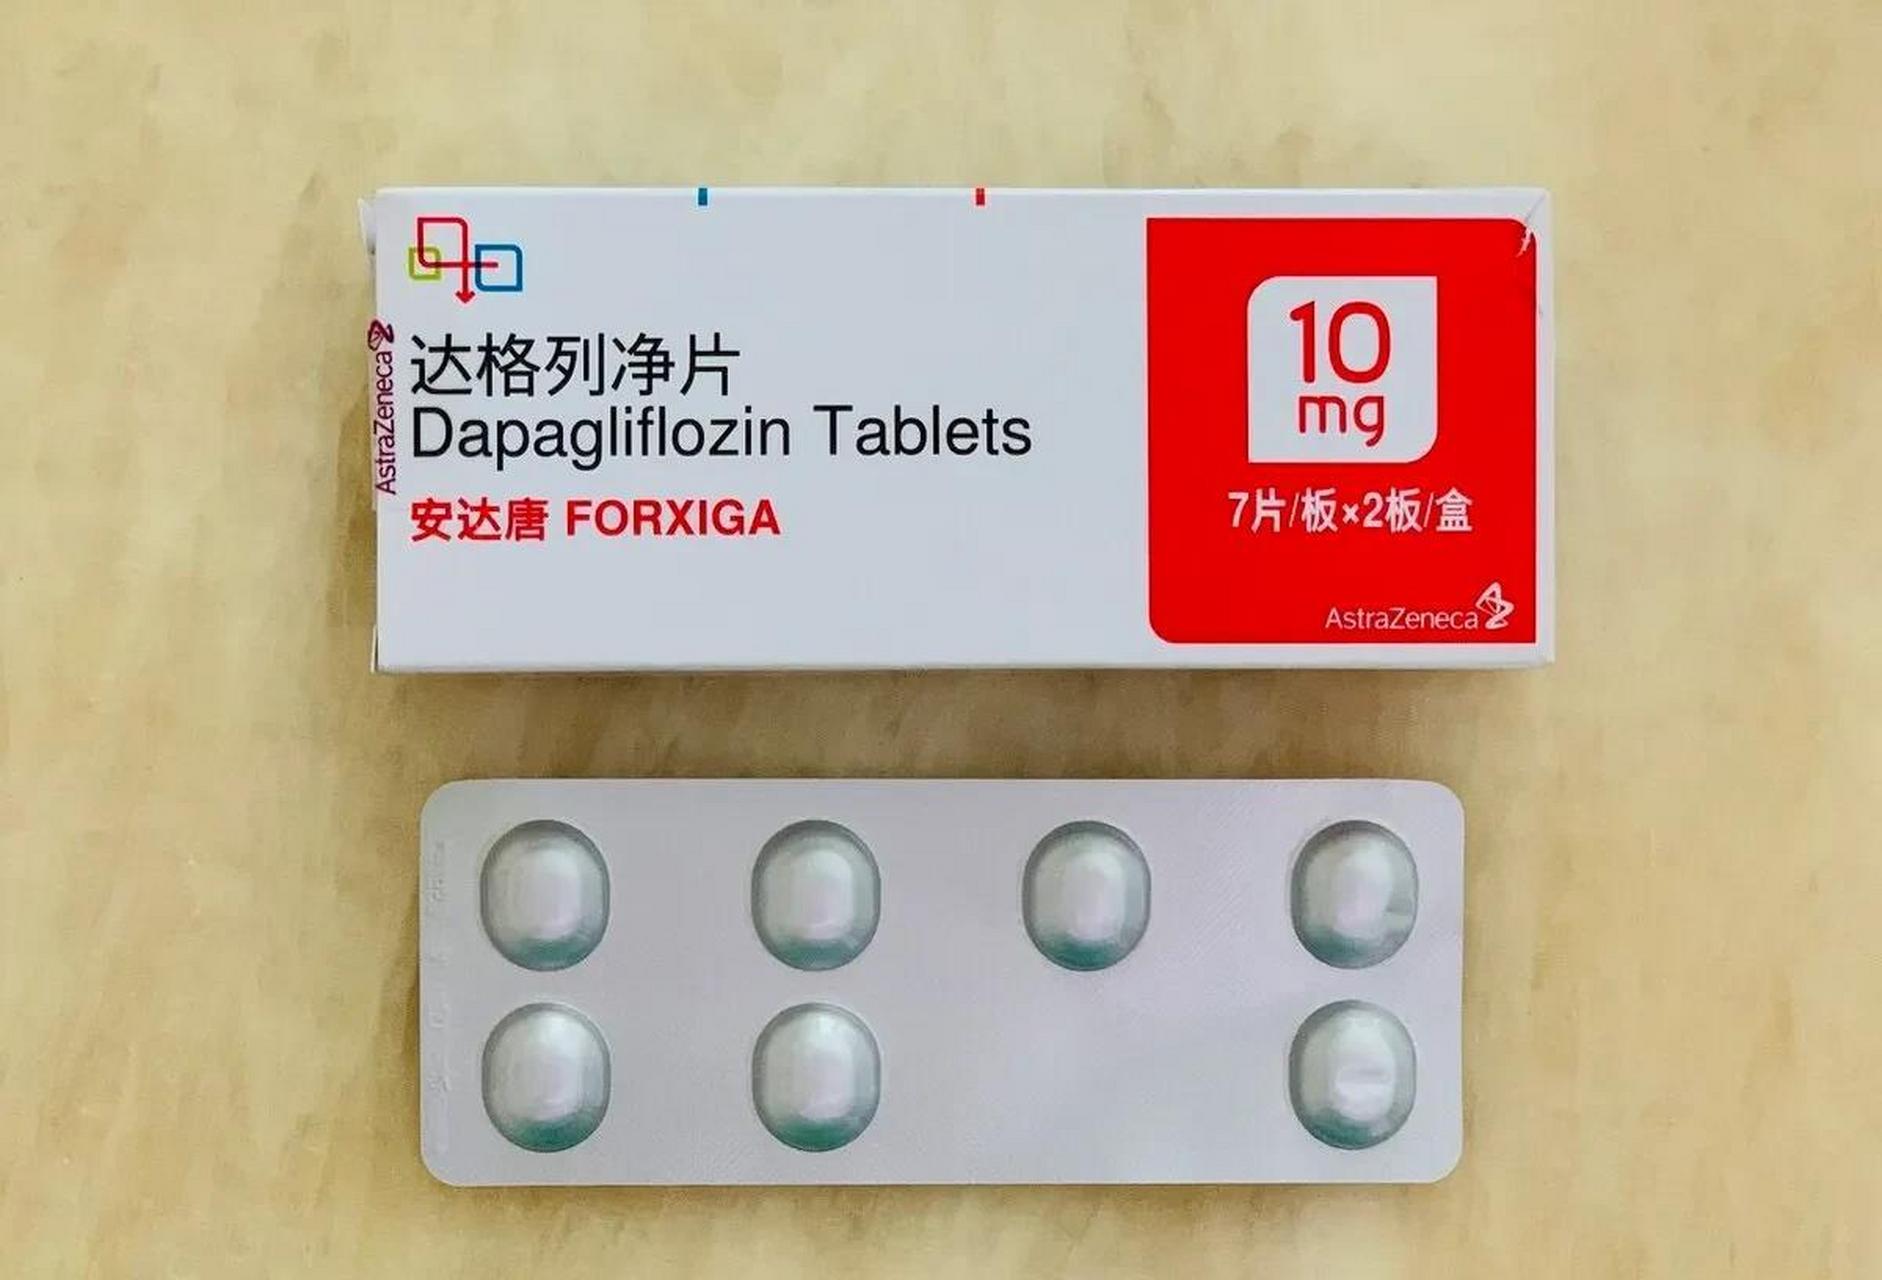 达格列净片是一种新型降糖药,属于钠葡萄糖协同转运蛋白2(sglt2)抑制